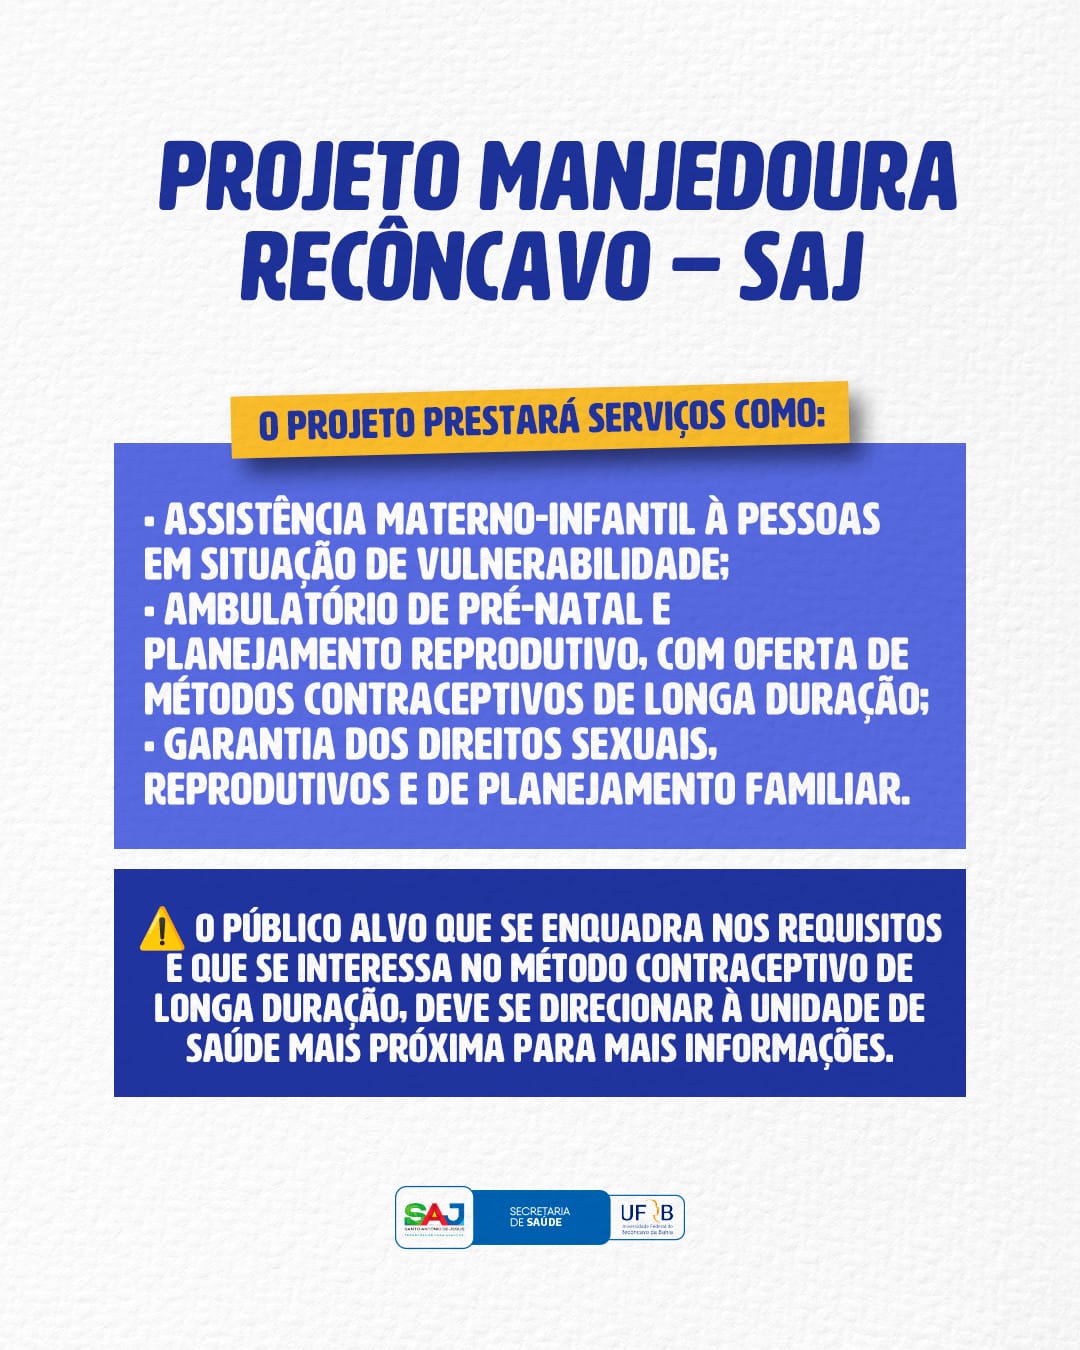 Prefeitura de Santo Antônio de Jesus, em parceria com a UFRB, implementará o Projeto Manjedoura Recôncavo – SAJ